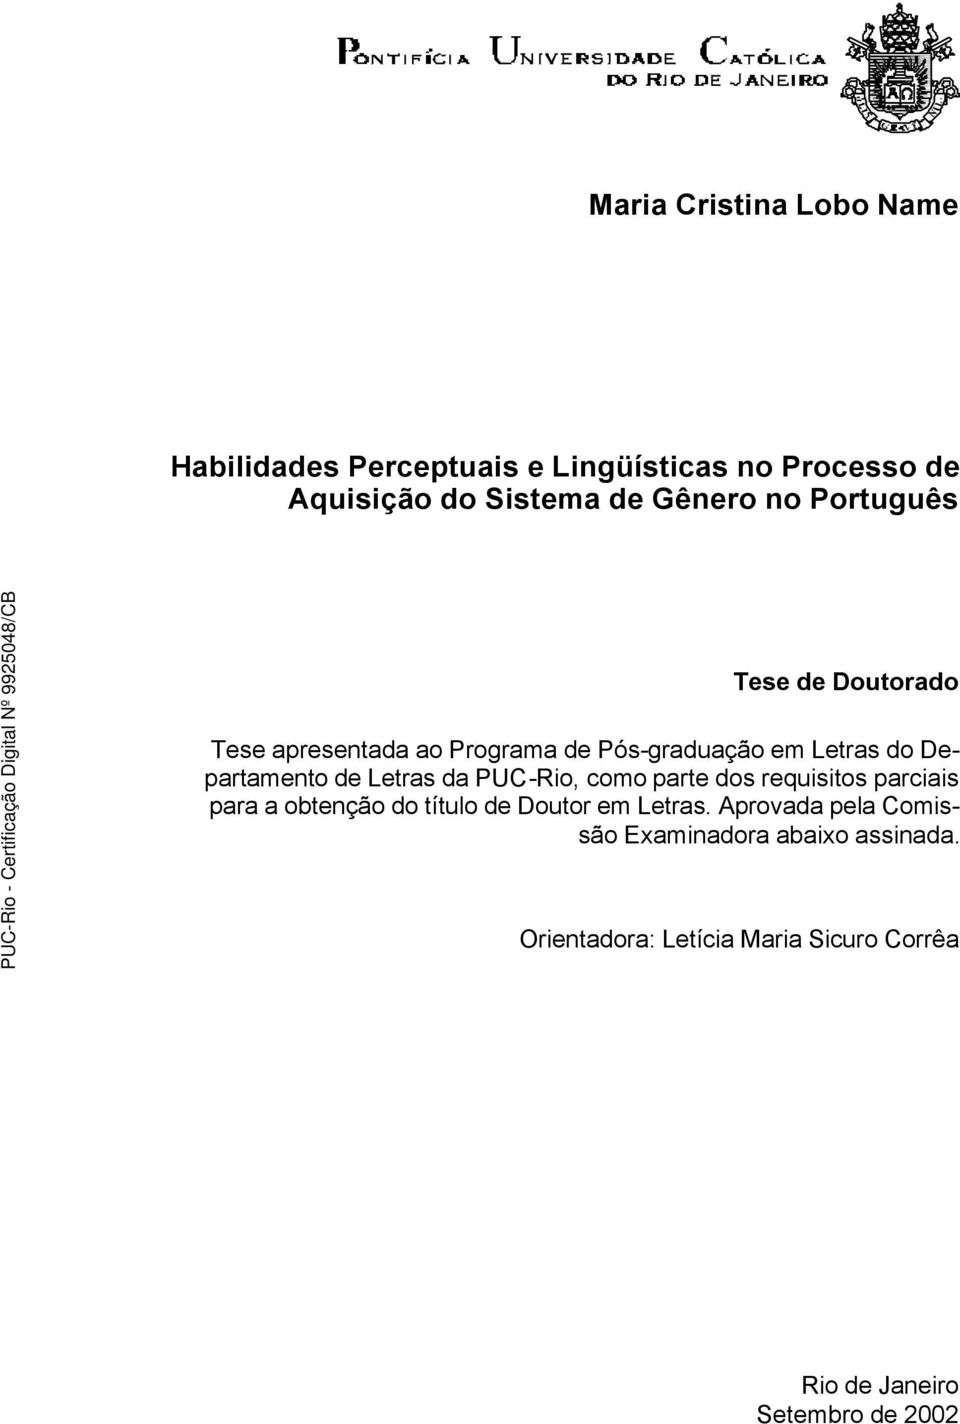 Letras da PUC-Rio, como parte dos requisitos parciais para a obtenção do título de Doutor em Letras.